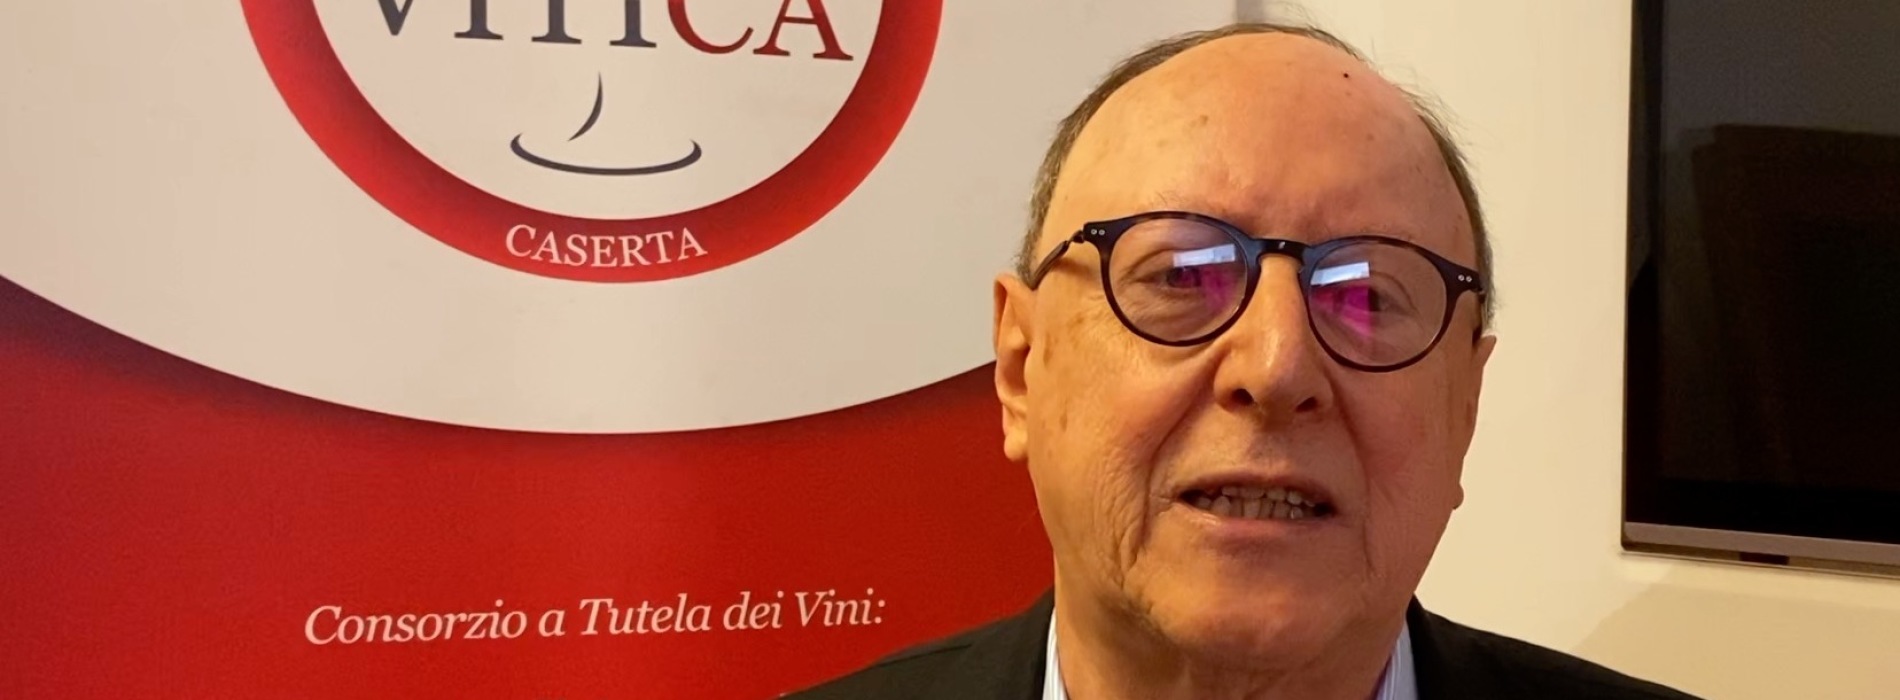 Vitica Open Day, il presidente del Consorzio Cesare Avenia